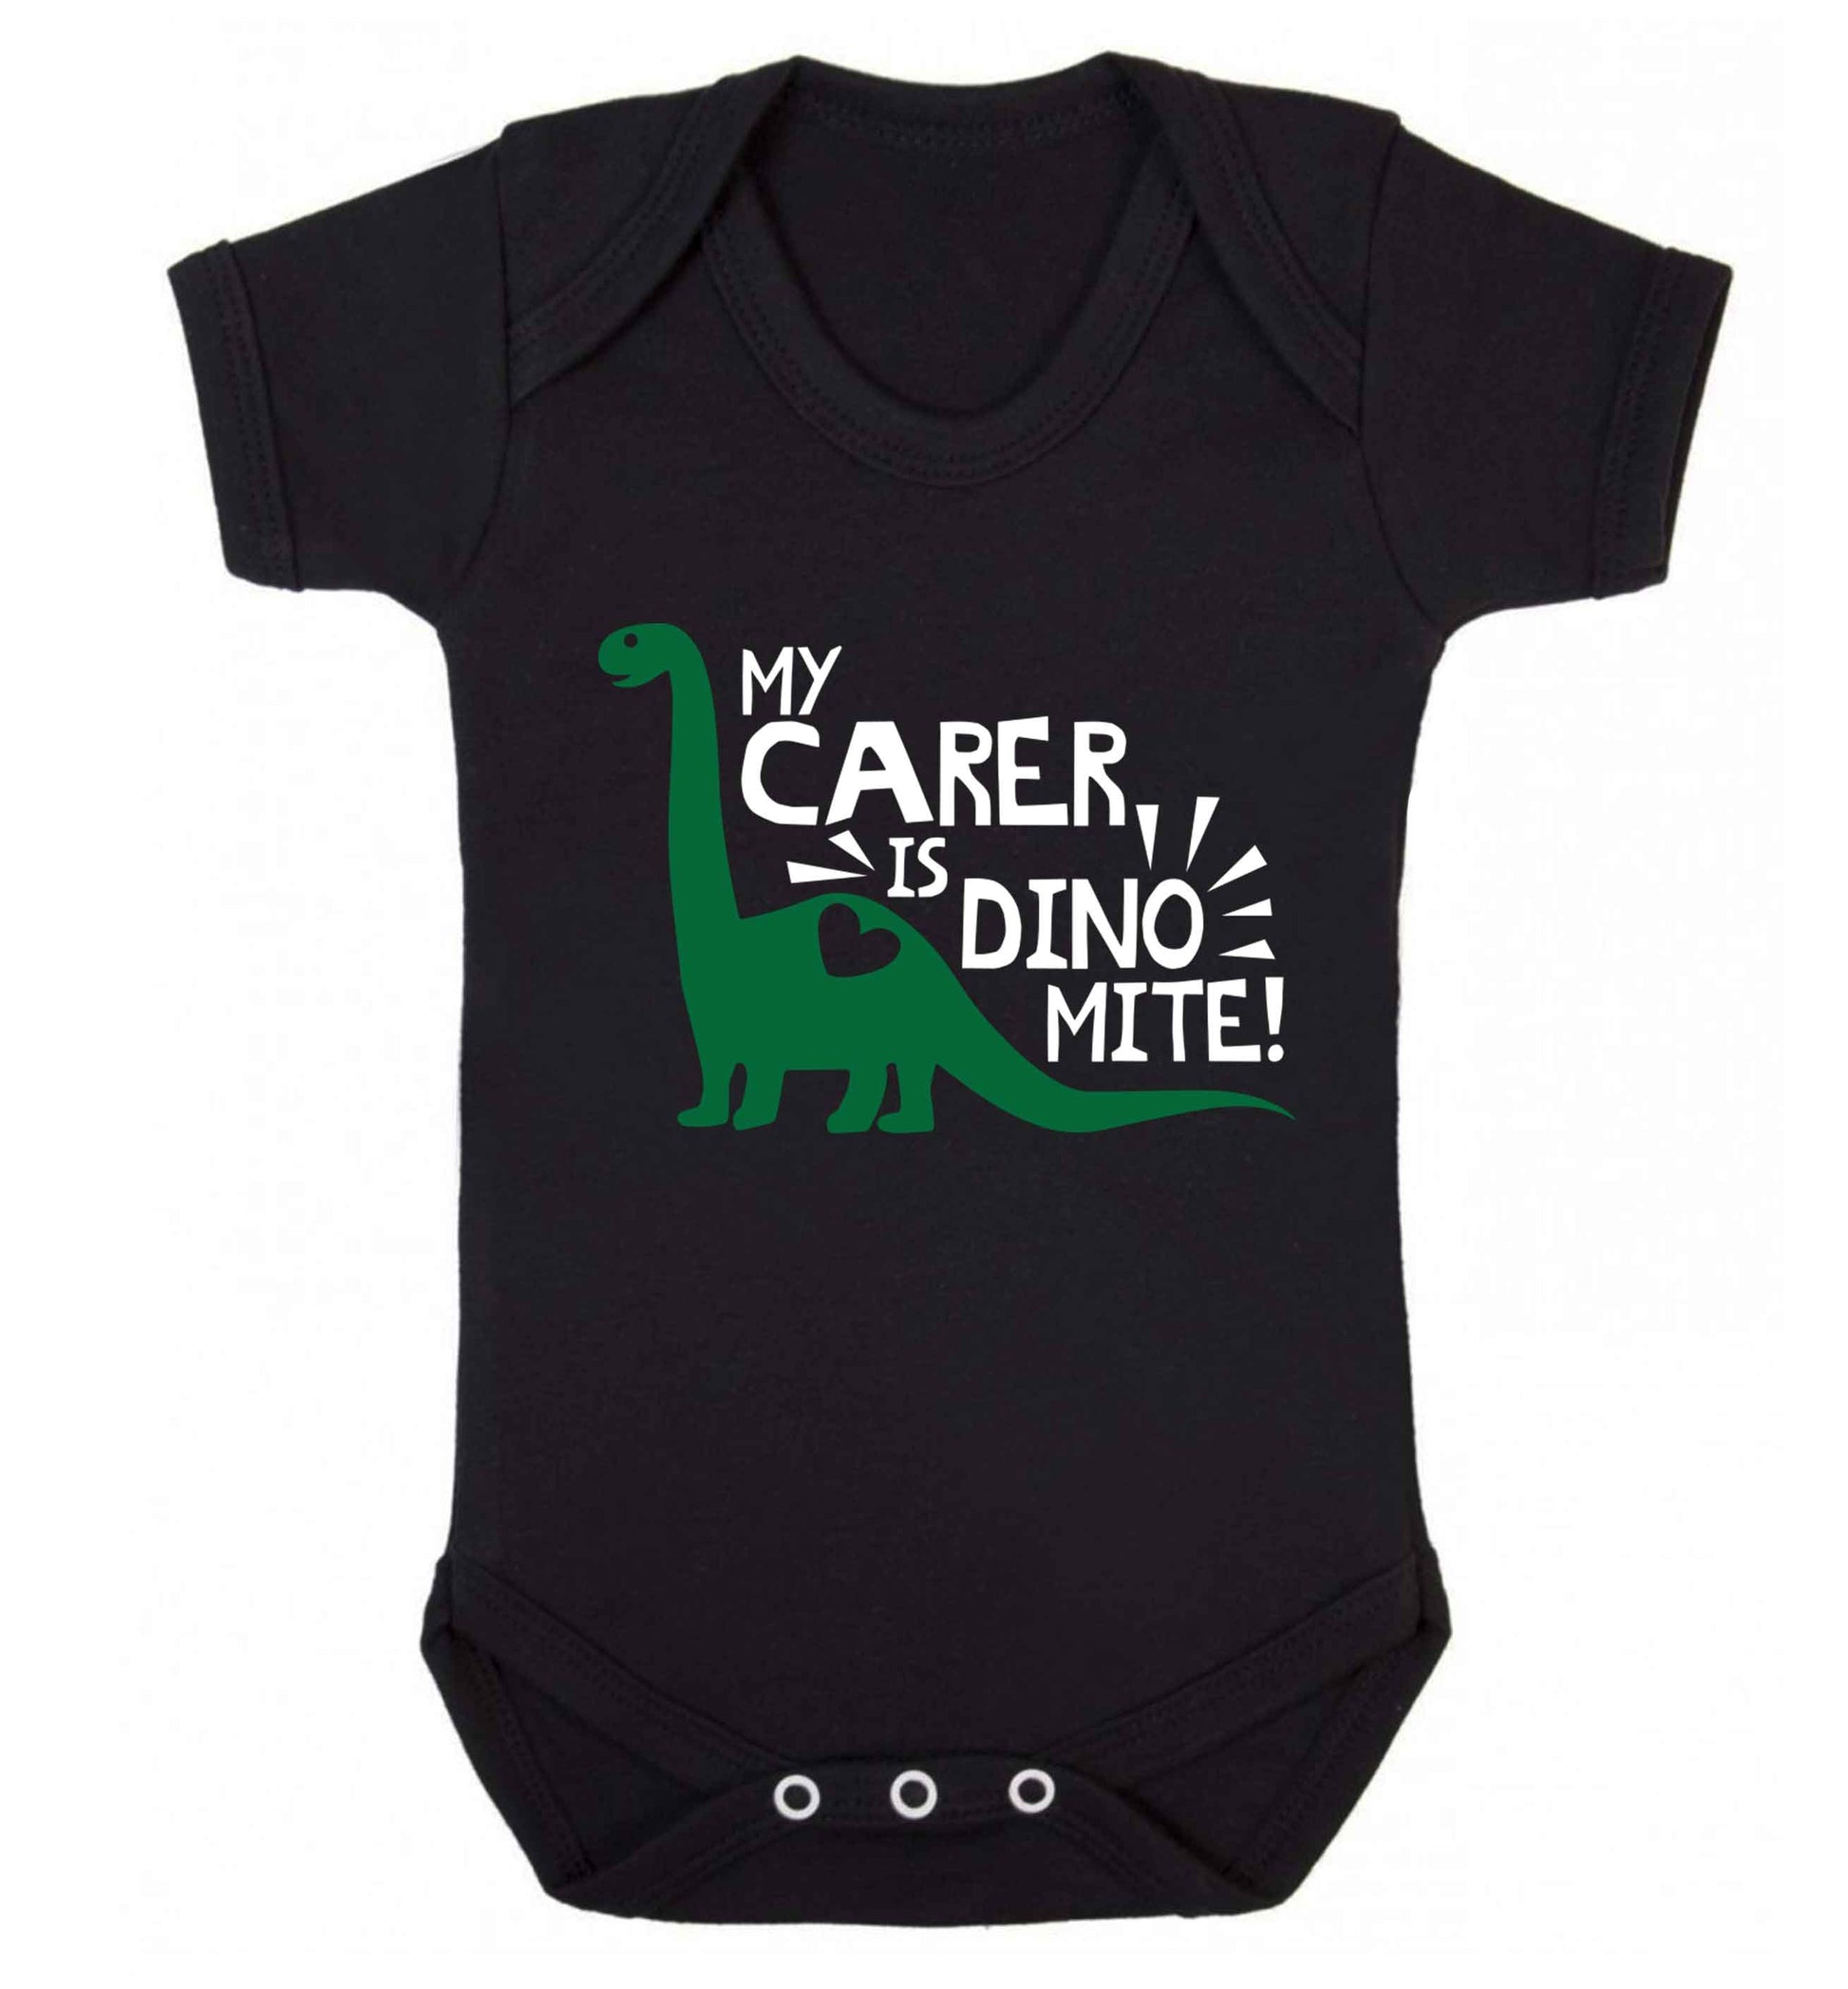 My carer is dinomite! Baby Vest black 18-24 months